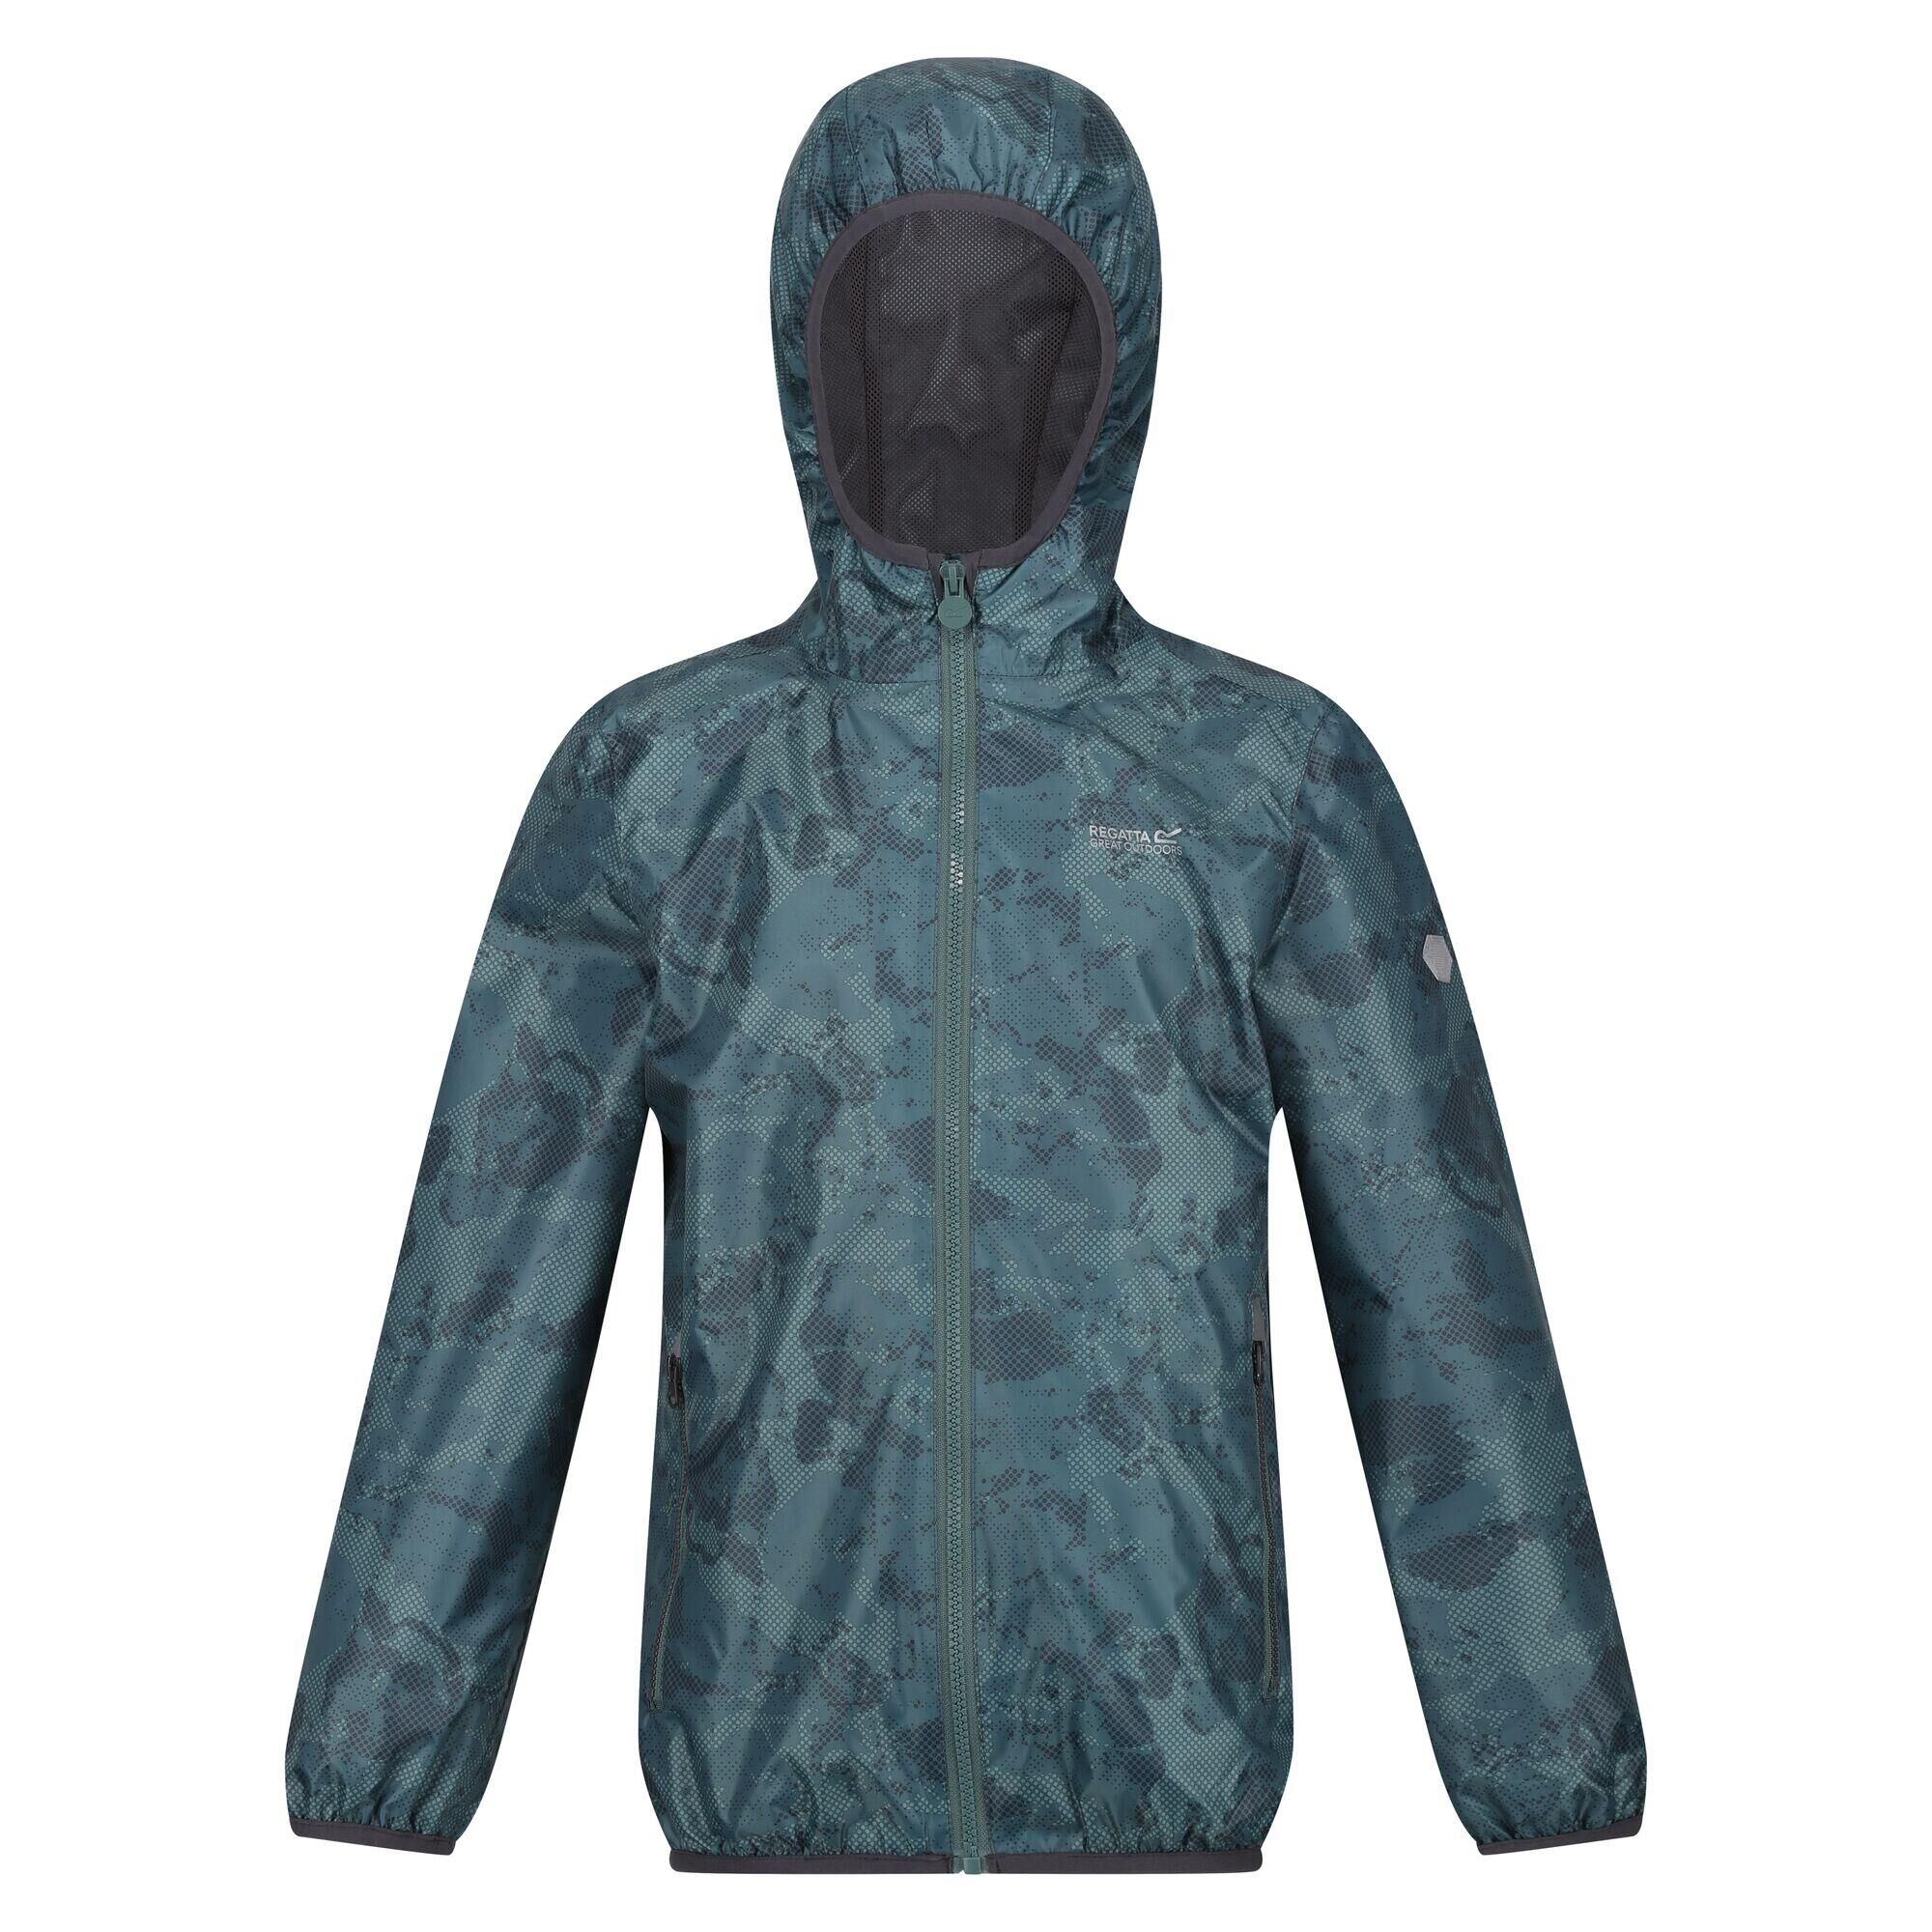 REGATTA Childrens/Kids Lever Printed Packaway Waterproof Jacket (Sea Pine)